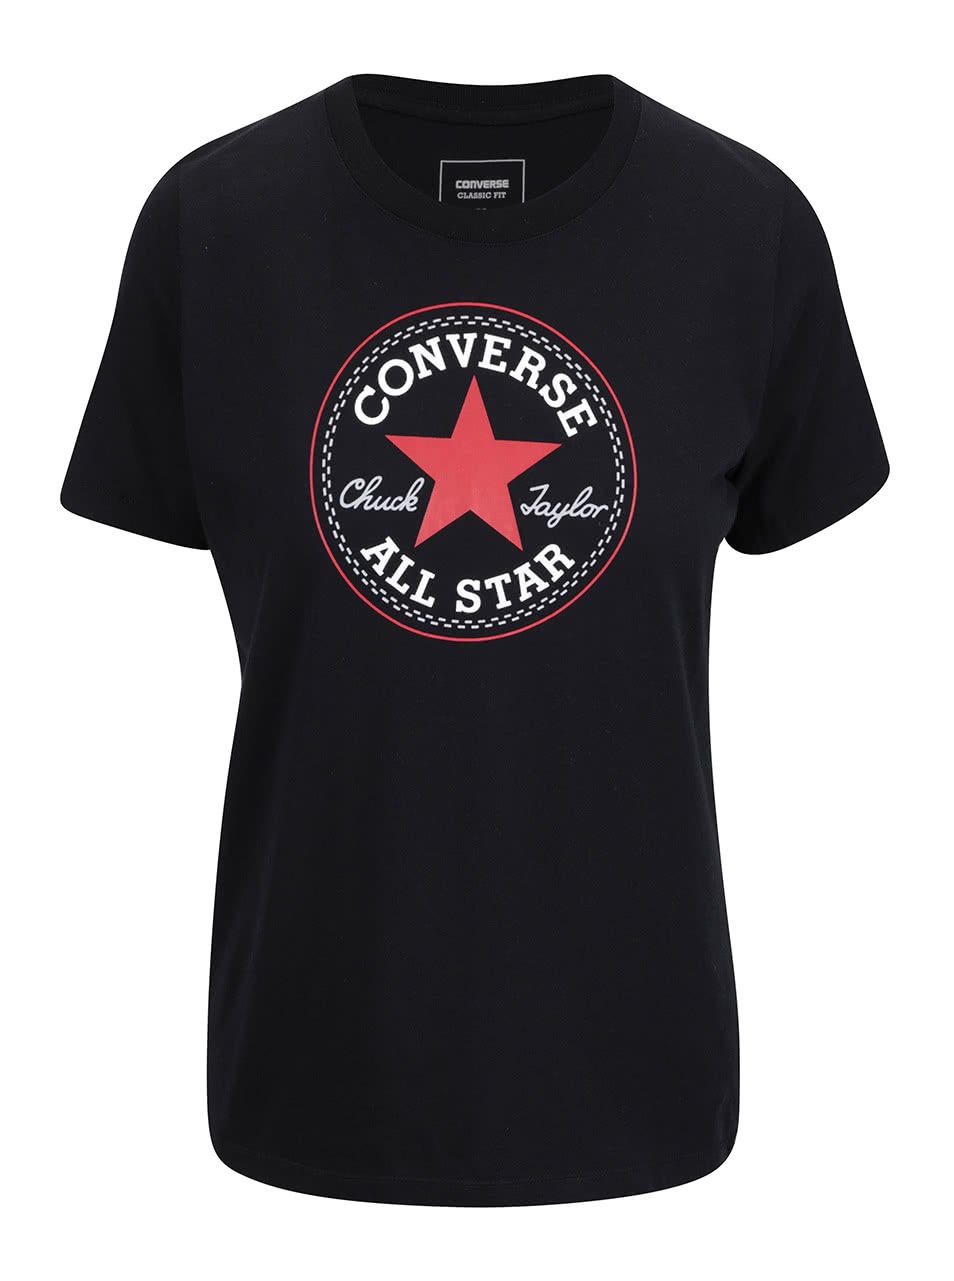 Černé dámské tričko s logem Converse Core